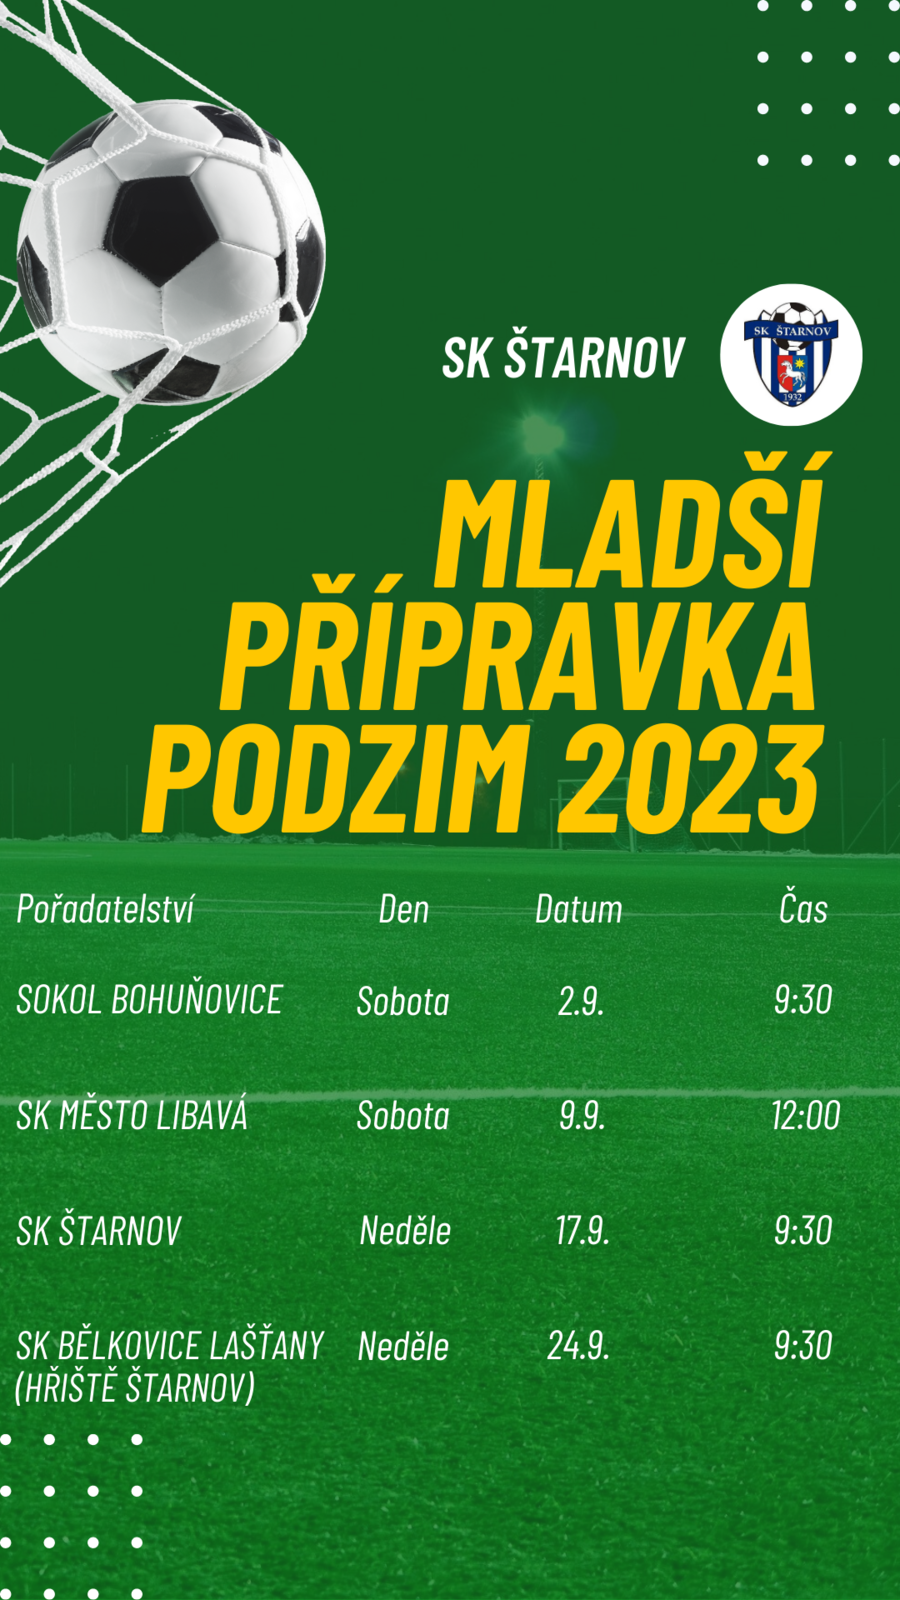 SK Štarnov - Mladší přípravka podzim 2023 (004) (002).png